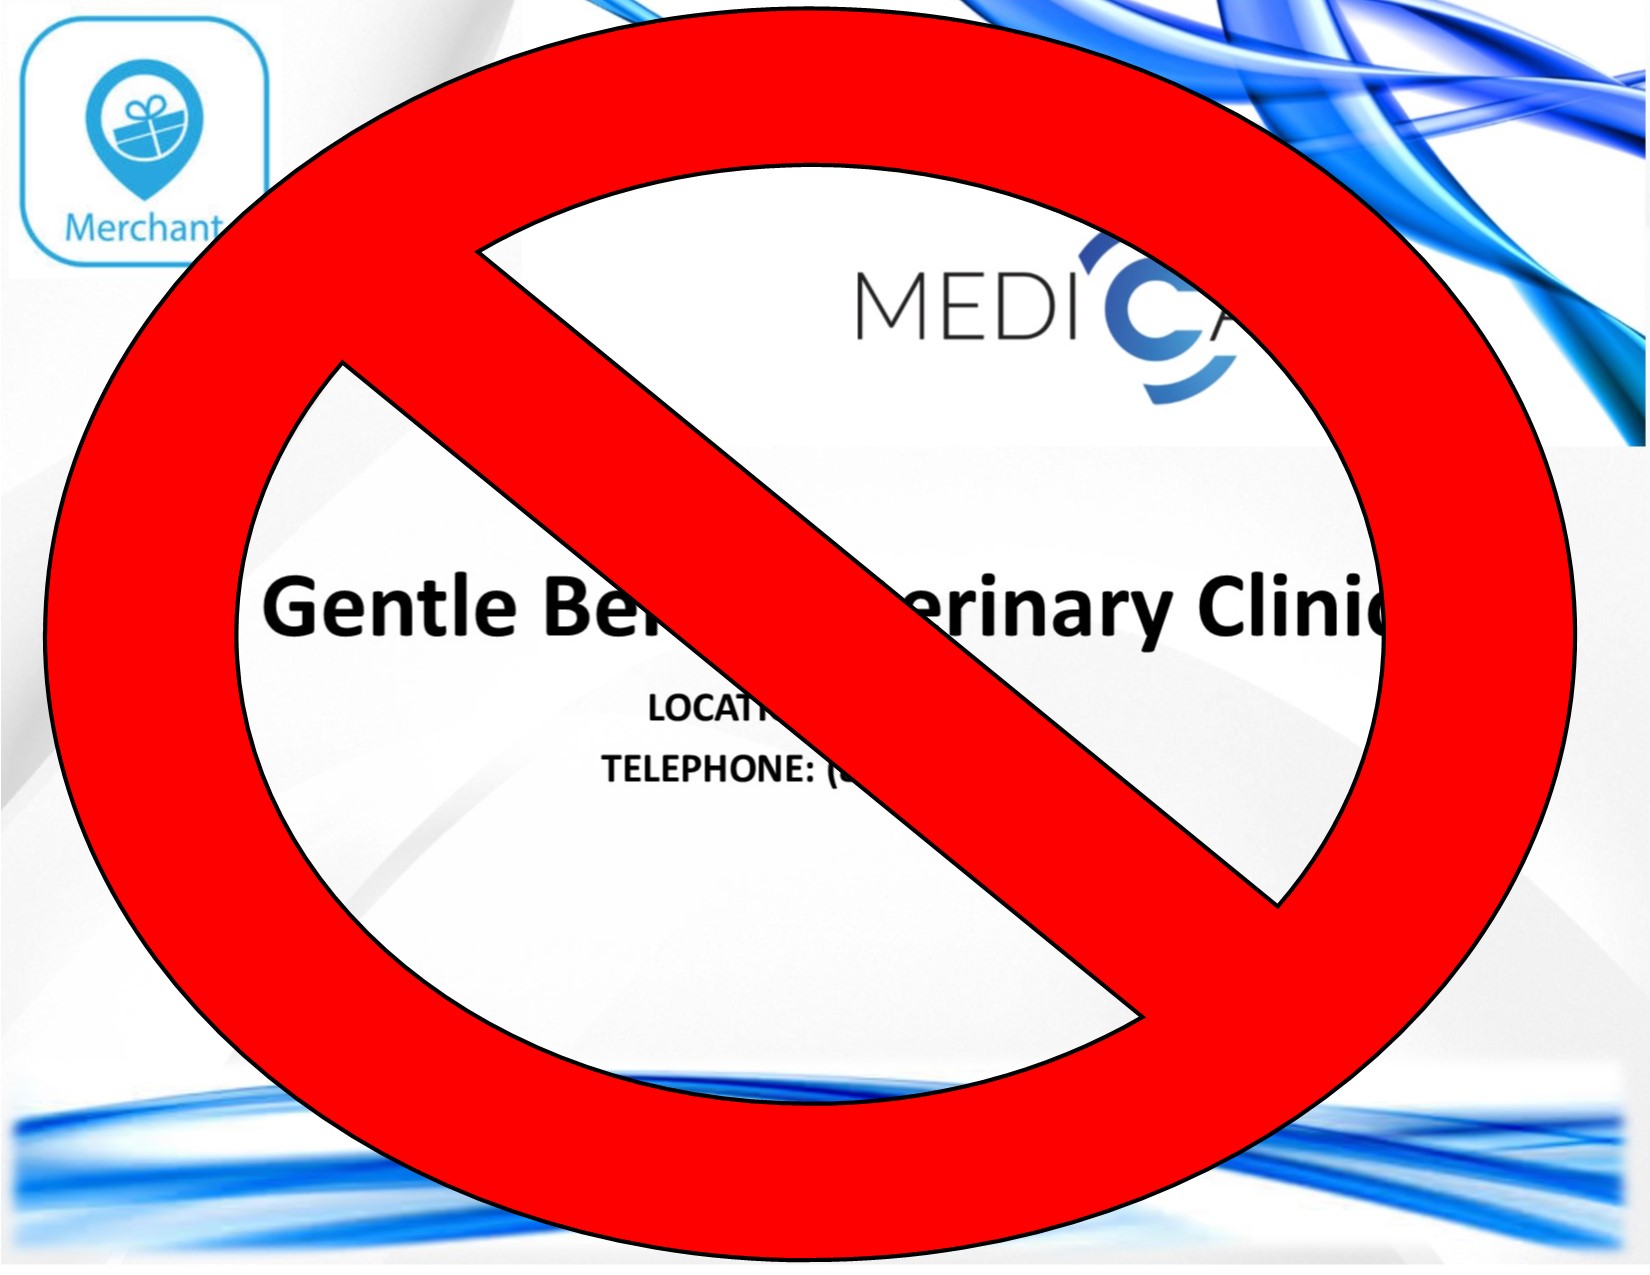 Gentle Ben’s Veterinary Clinic- NO LONGER A MERCHANT